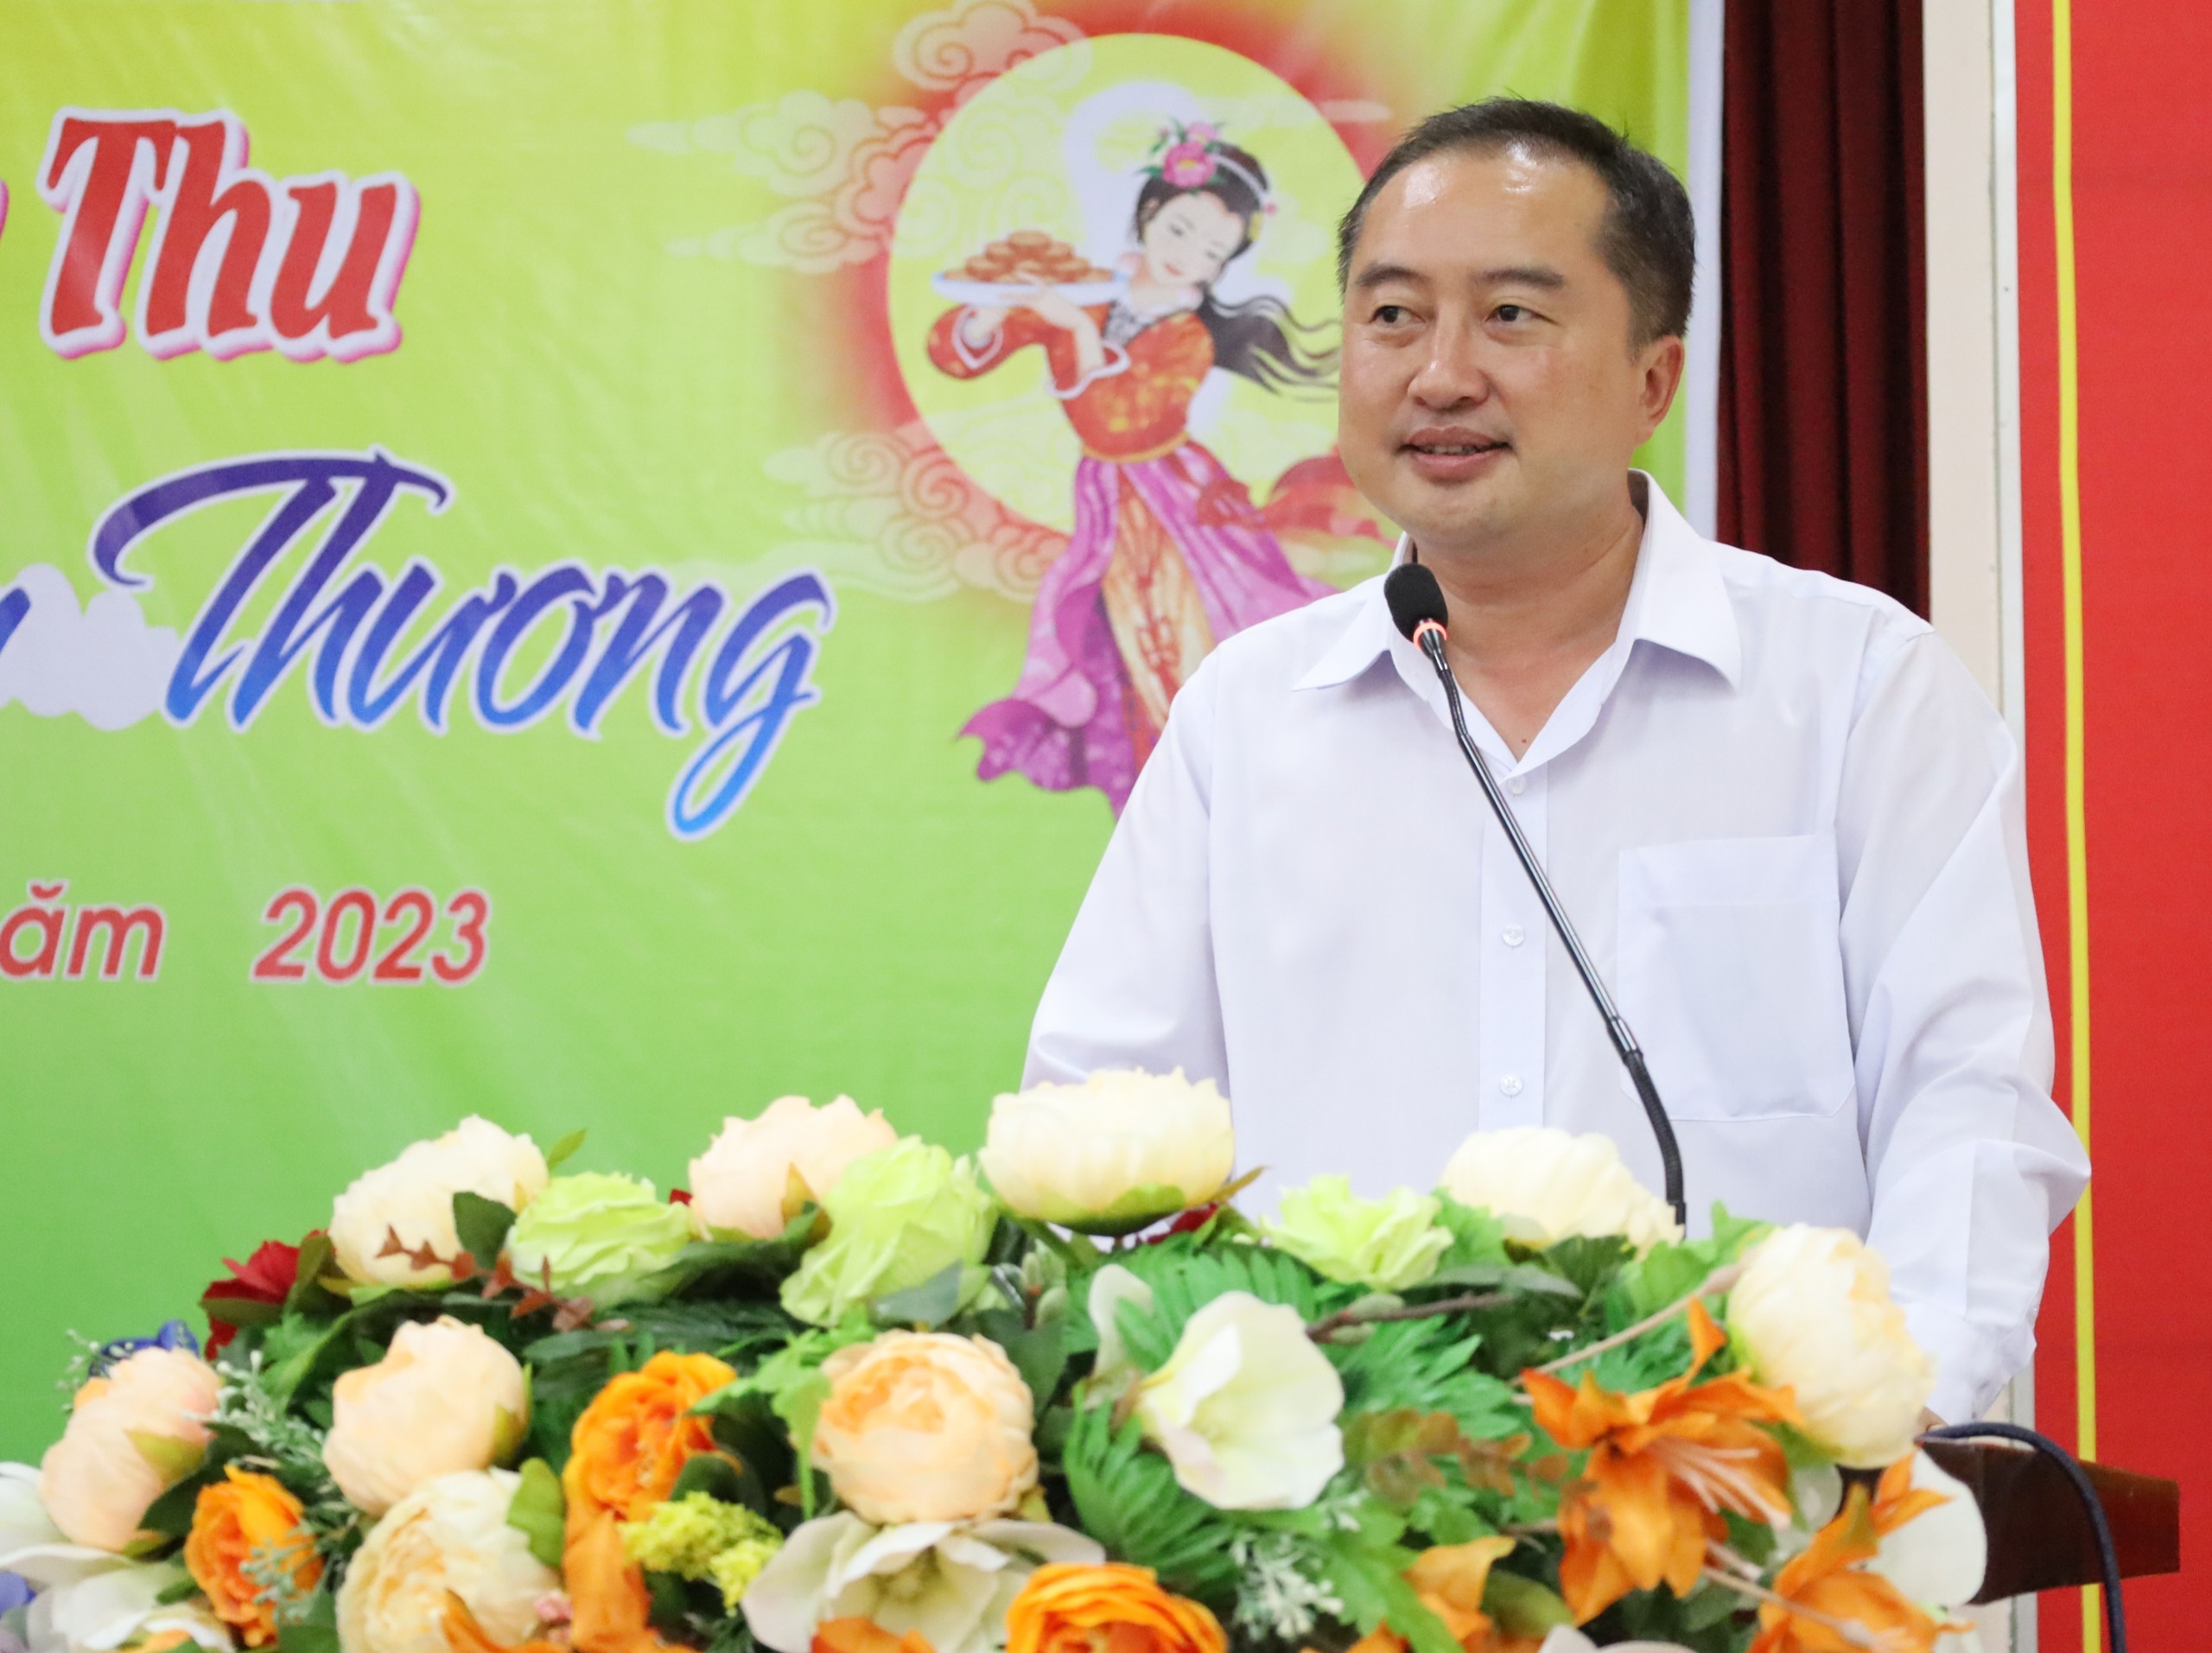 Ông Huỳnh Văn Tùng – Phó Bí thư thường trực Huyện ủy Thới Lai phát biểu chúc mừng các cháu thiếu nhi nhân dịp Tết Trung thu năm 2023.